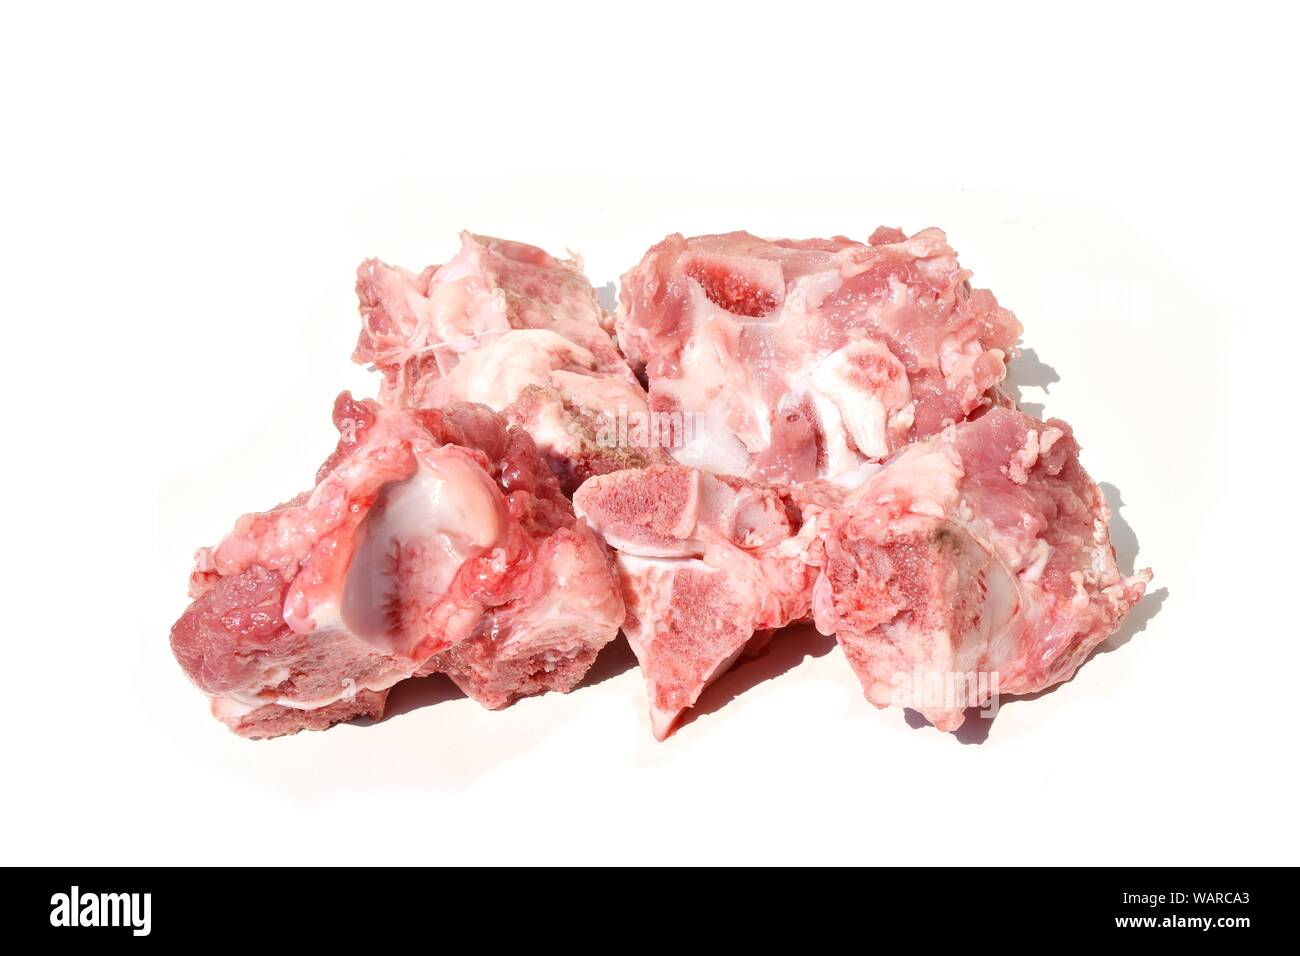 Rohes Schweinefleisch Wirbelsäule auf einem weißen Hintergrund, Fleisch und Knochen für Suppe kochen Stockfoto